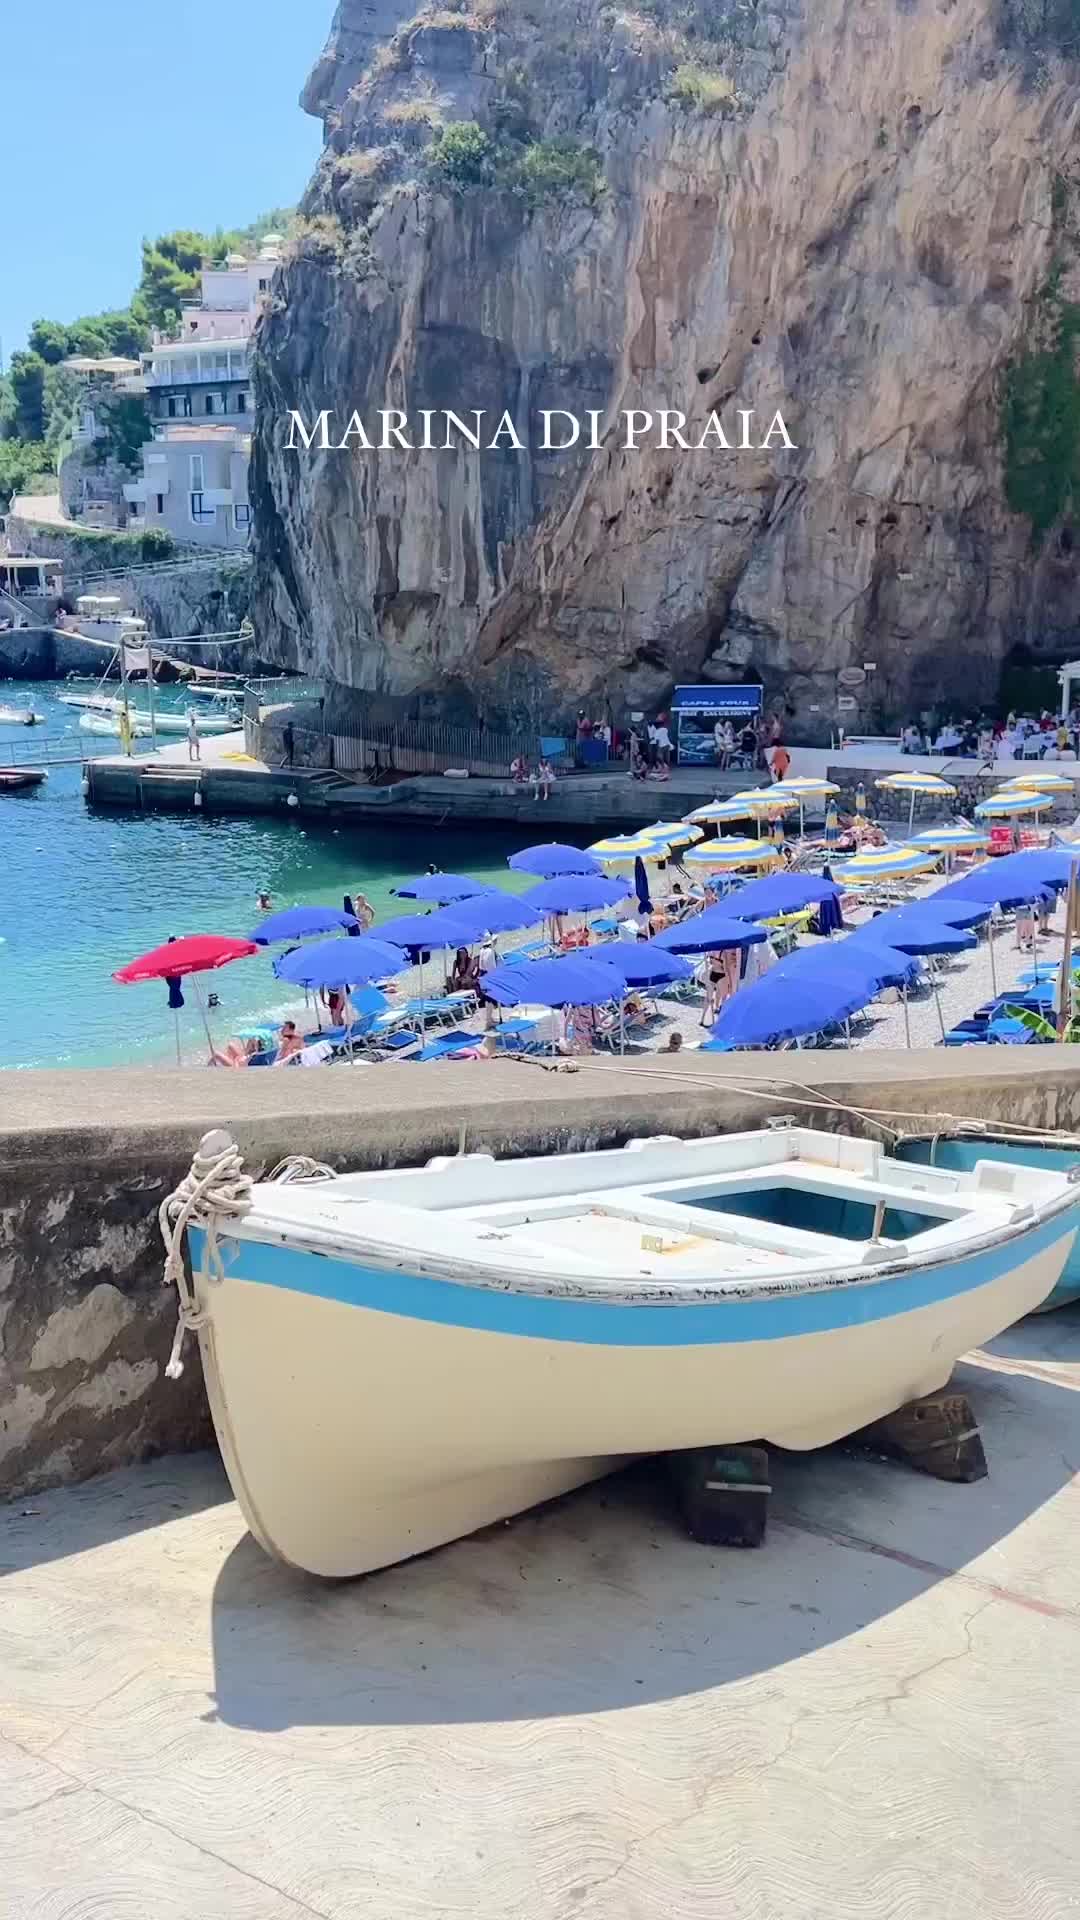 Discover Marina di Praia on the Amalfi Coast